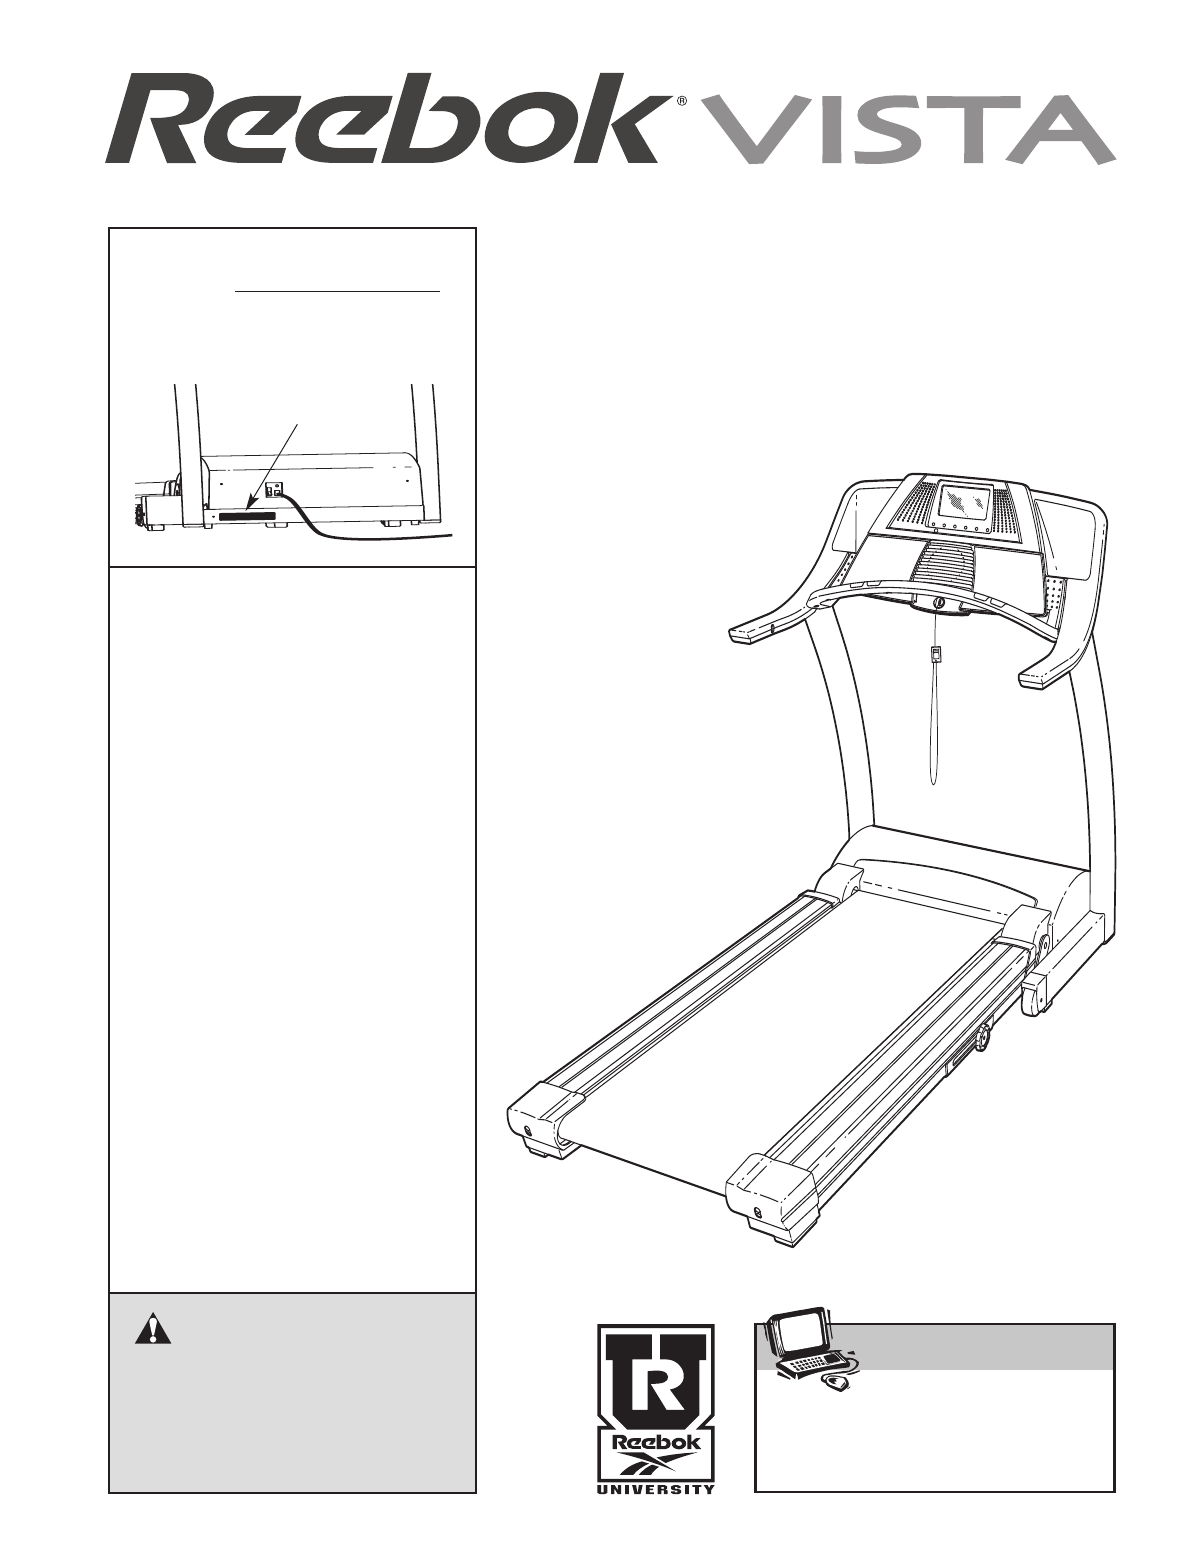 reebok vista treadmill